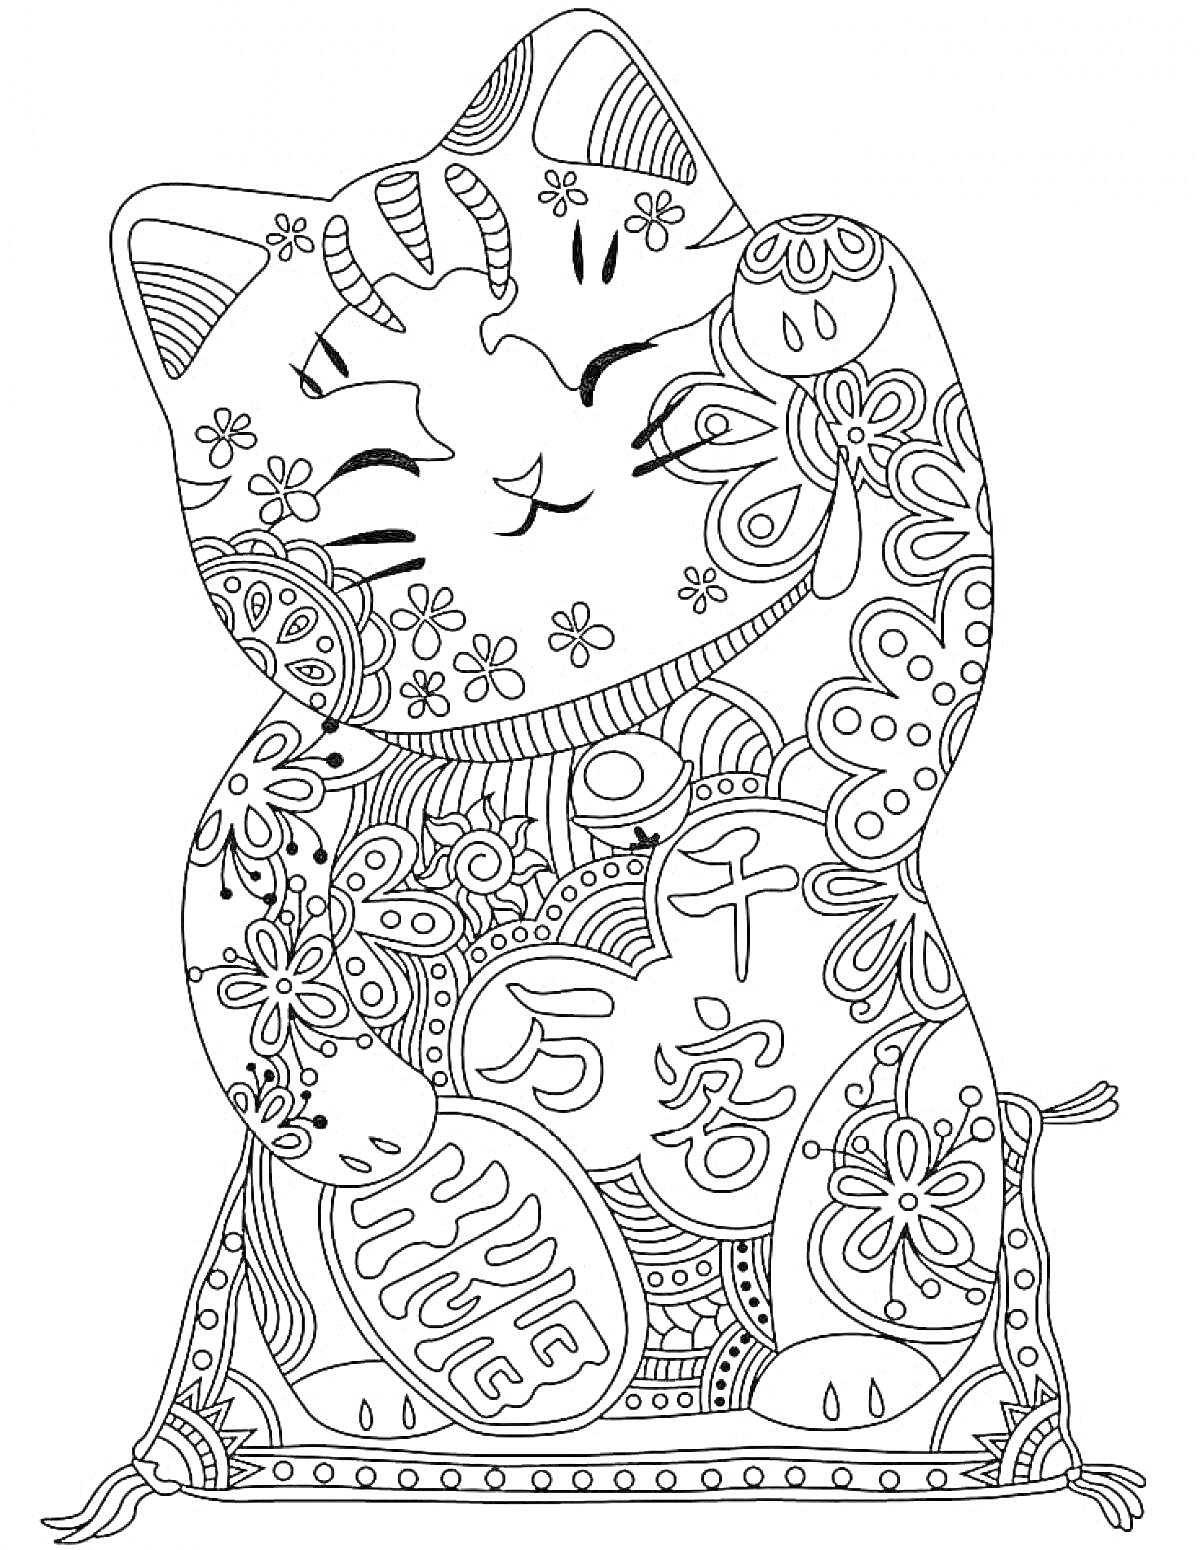 Раскраска Антистресс раскраска с кошкой, украшенной цветами, геометрическими узорами и китайскими иероглифами